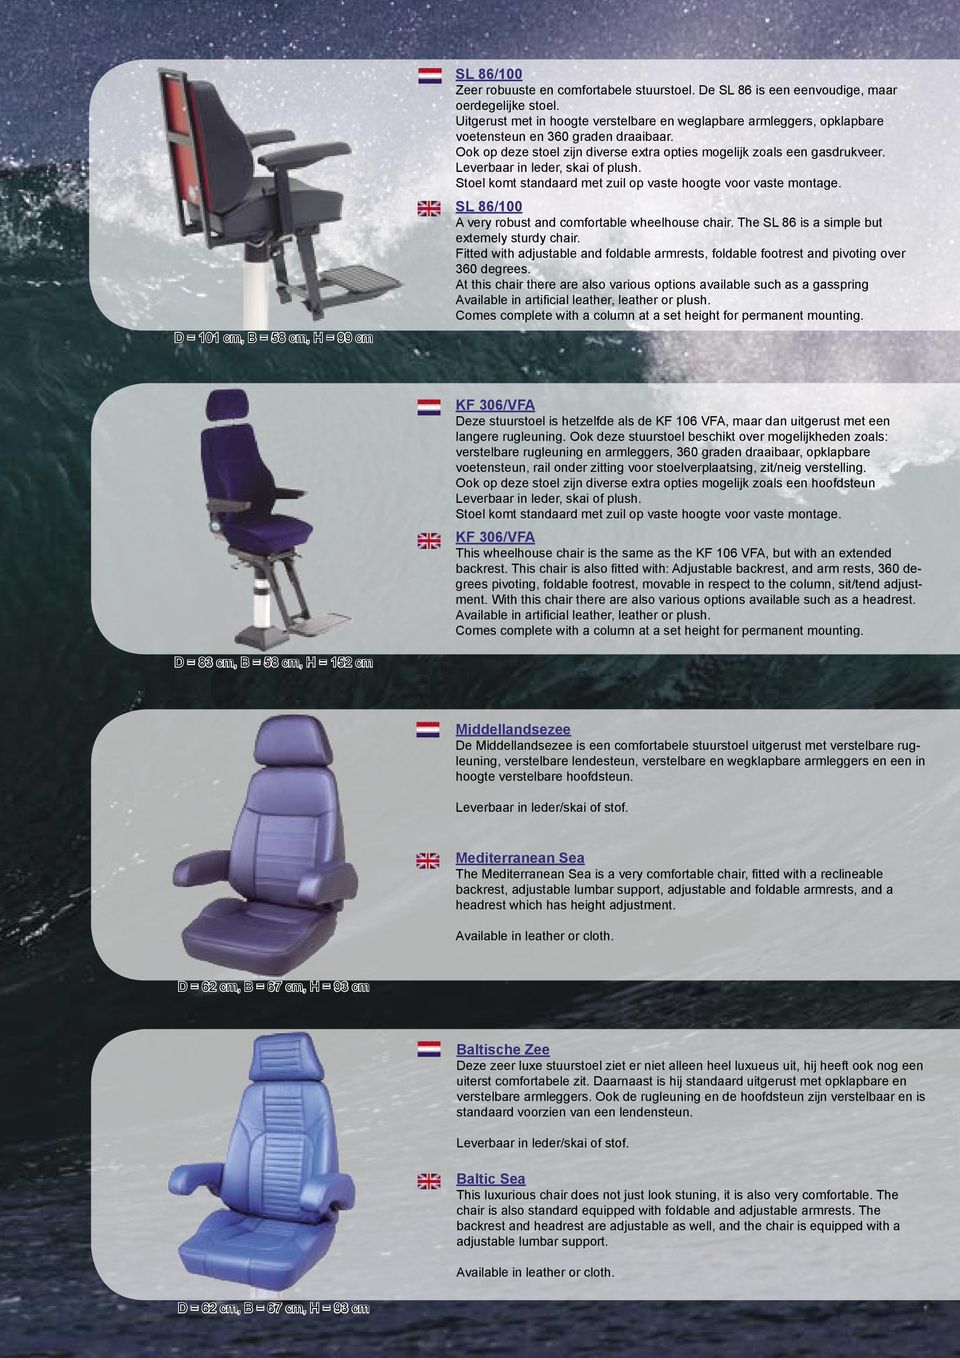 Leverbaar in leder, skai of plush. Stoel komt standaard met zuil op vaste hoogte voor vaste montage. SL 86/100 A very robust and comfortable wheelhouse chair.